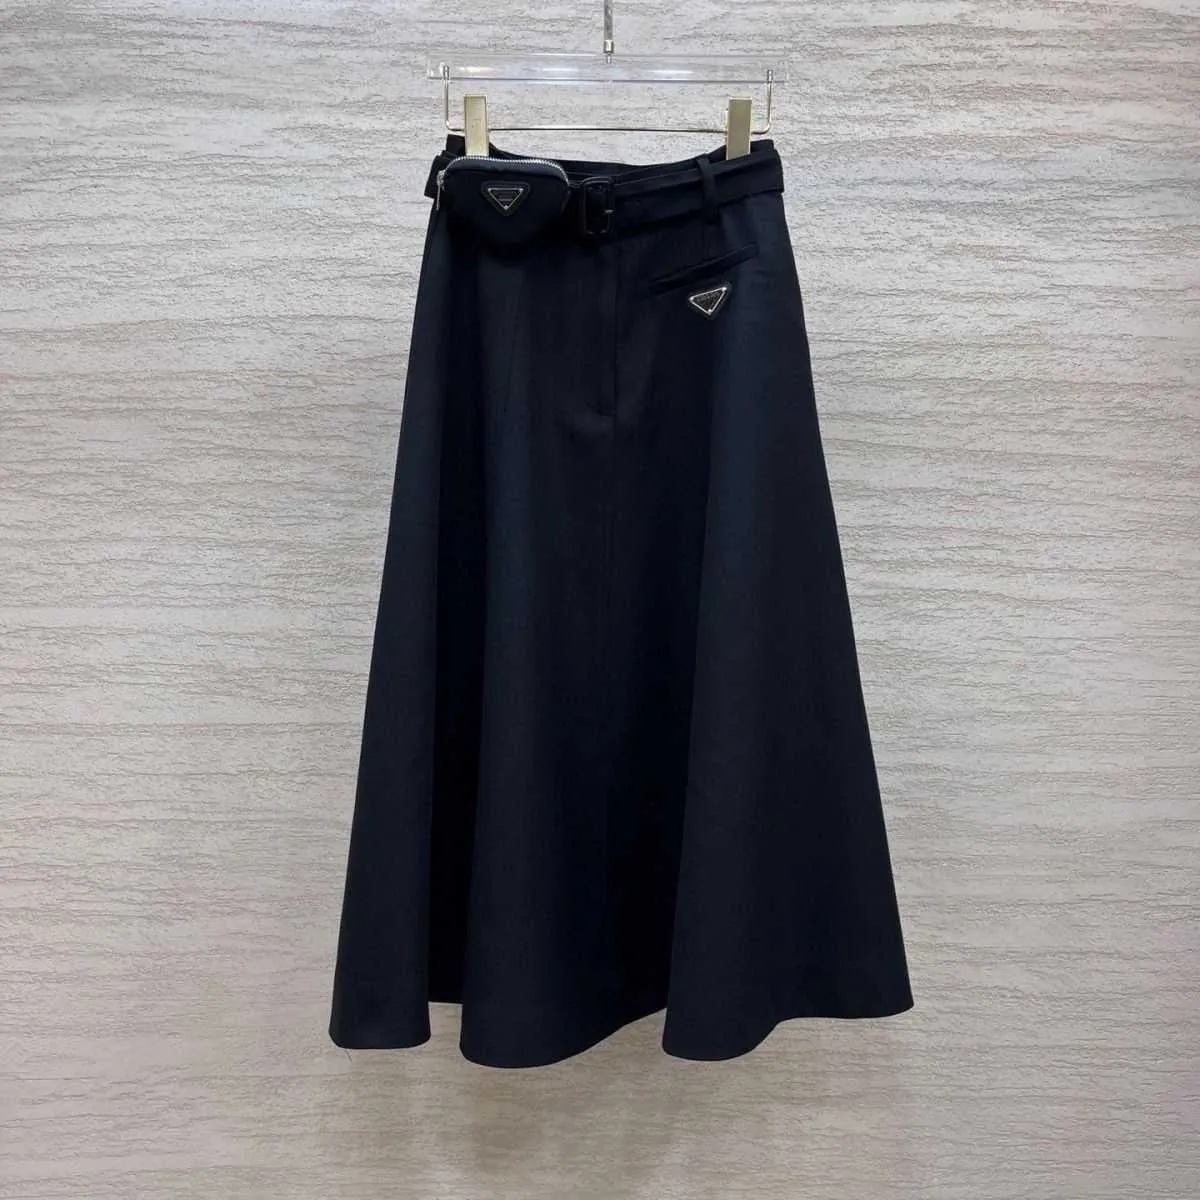 Cinturón negro de verano para mujer Fanny pack falda larga de sarga, tela de sarga antiarrugas que no se encoge, versión casual suelta de la moda todos los días.